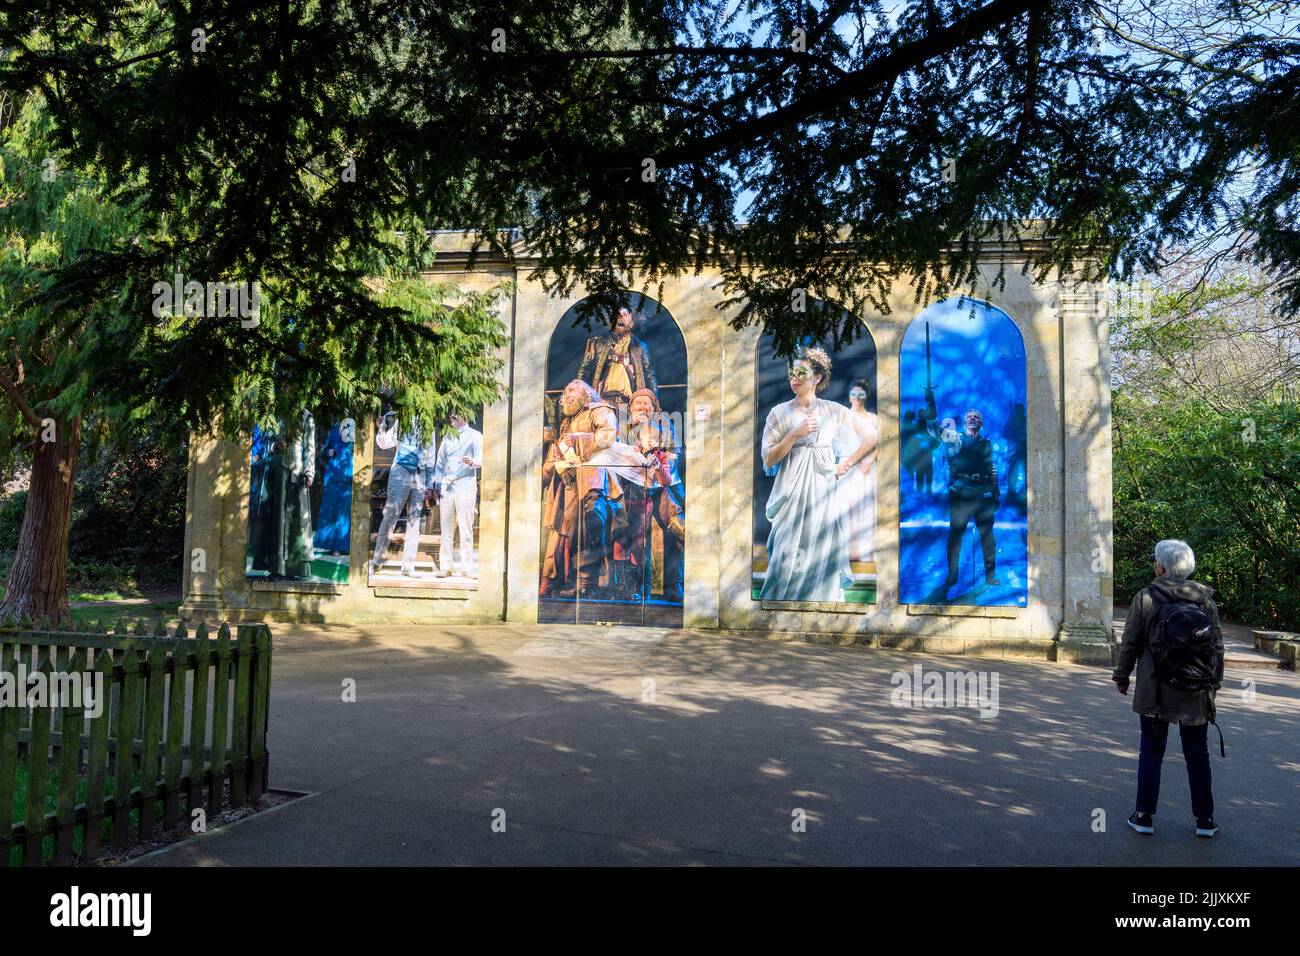 Shakespear-Figuren im Freien werden in Stratford-upon-Avon, Warwickshire, West Midlends, England, präsentiert. Stockfoto